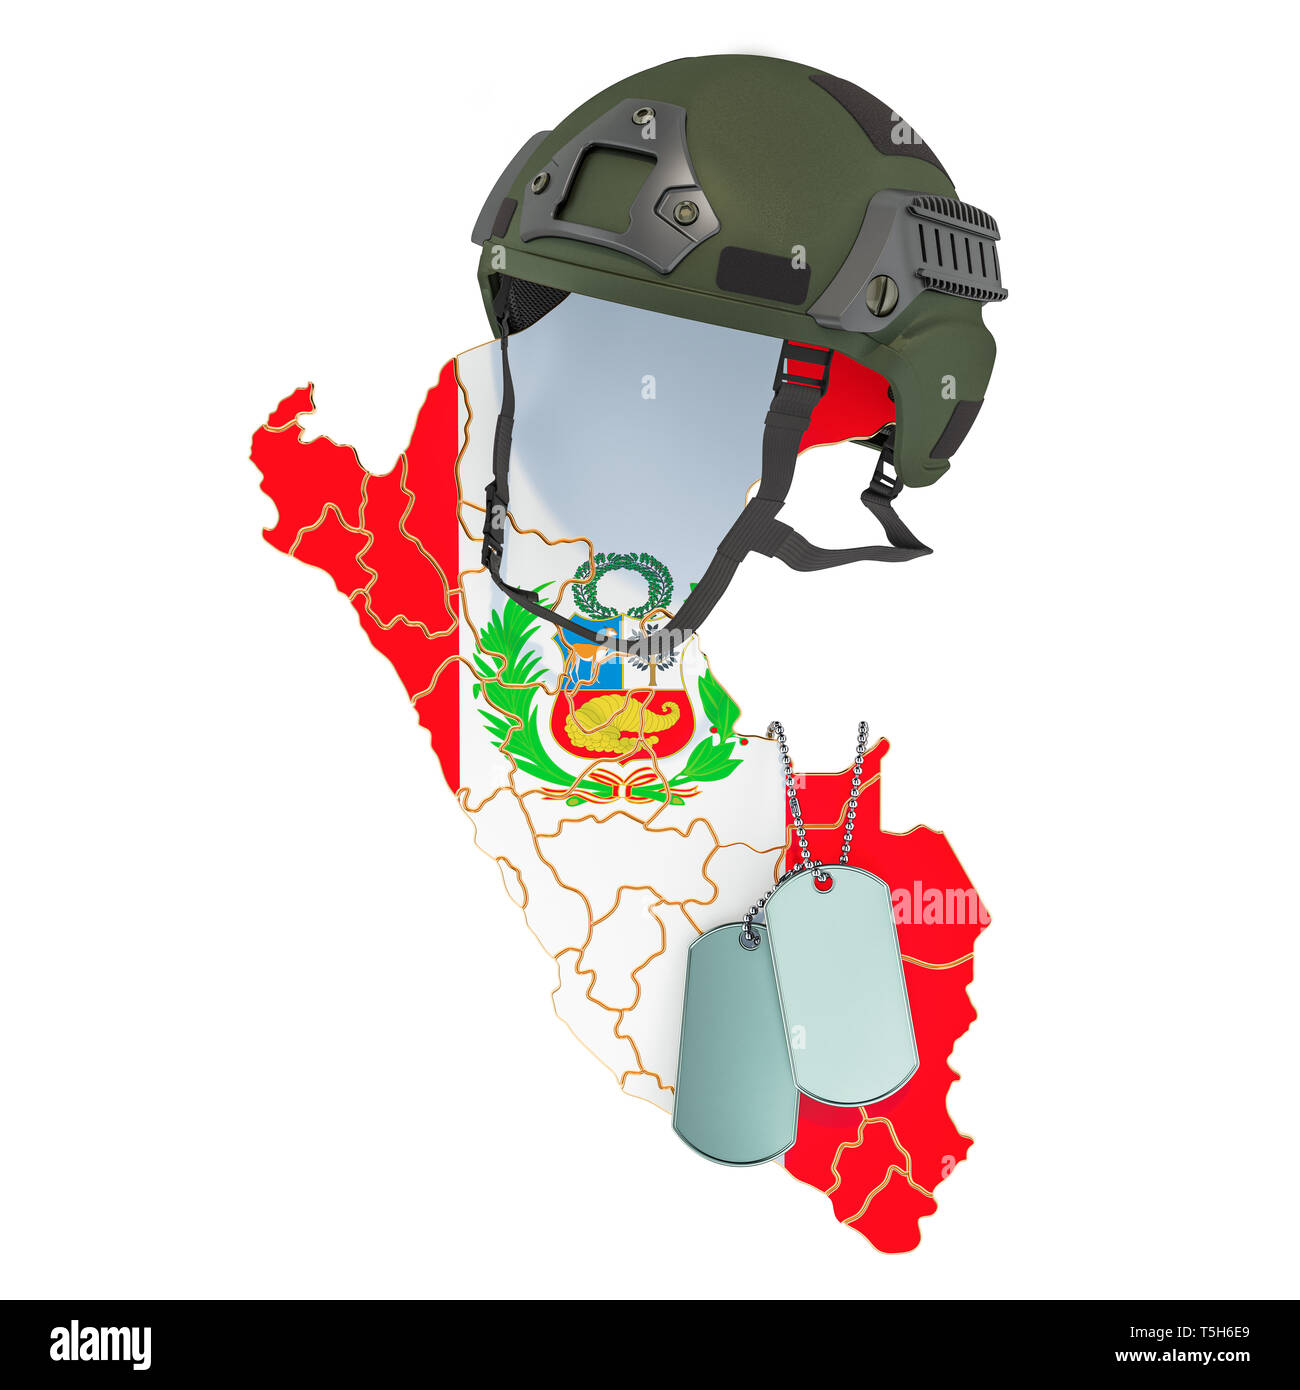 La fuerza militar del ejército peruano, o el concepto de guerra. 3D rendering aislado sobre fondo blanco. Foto de stock